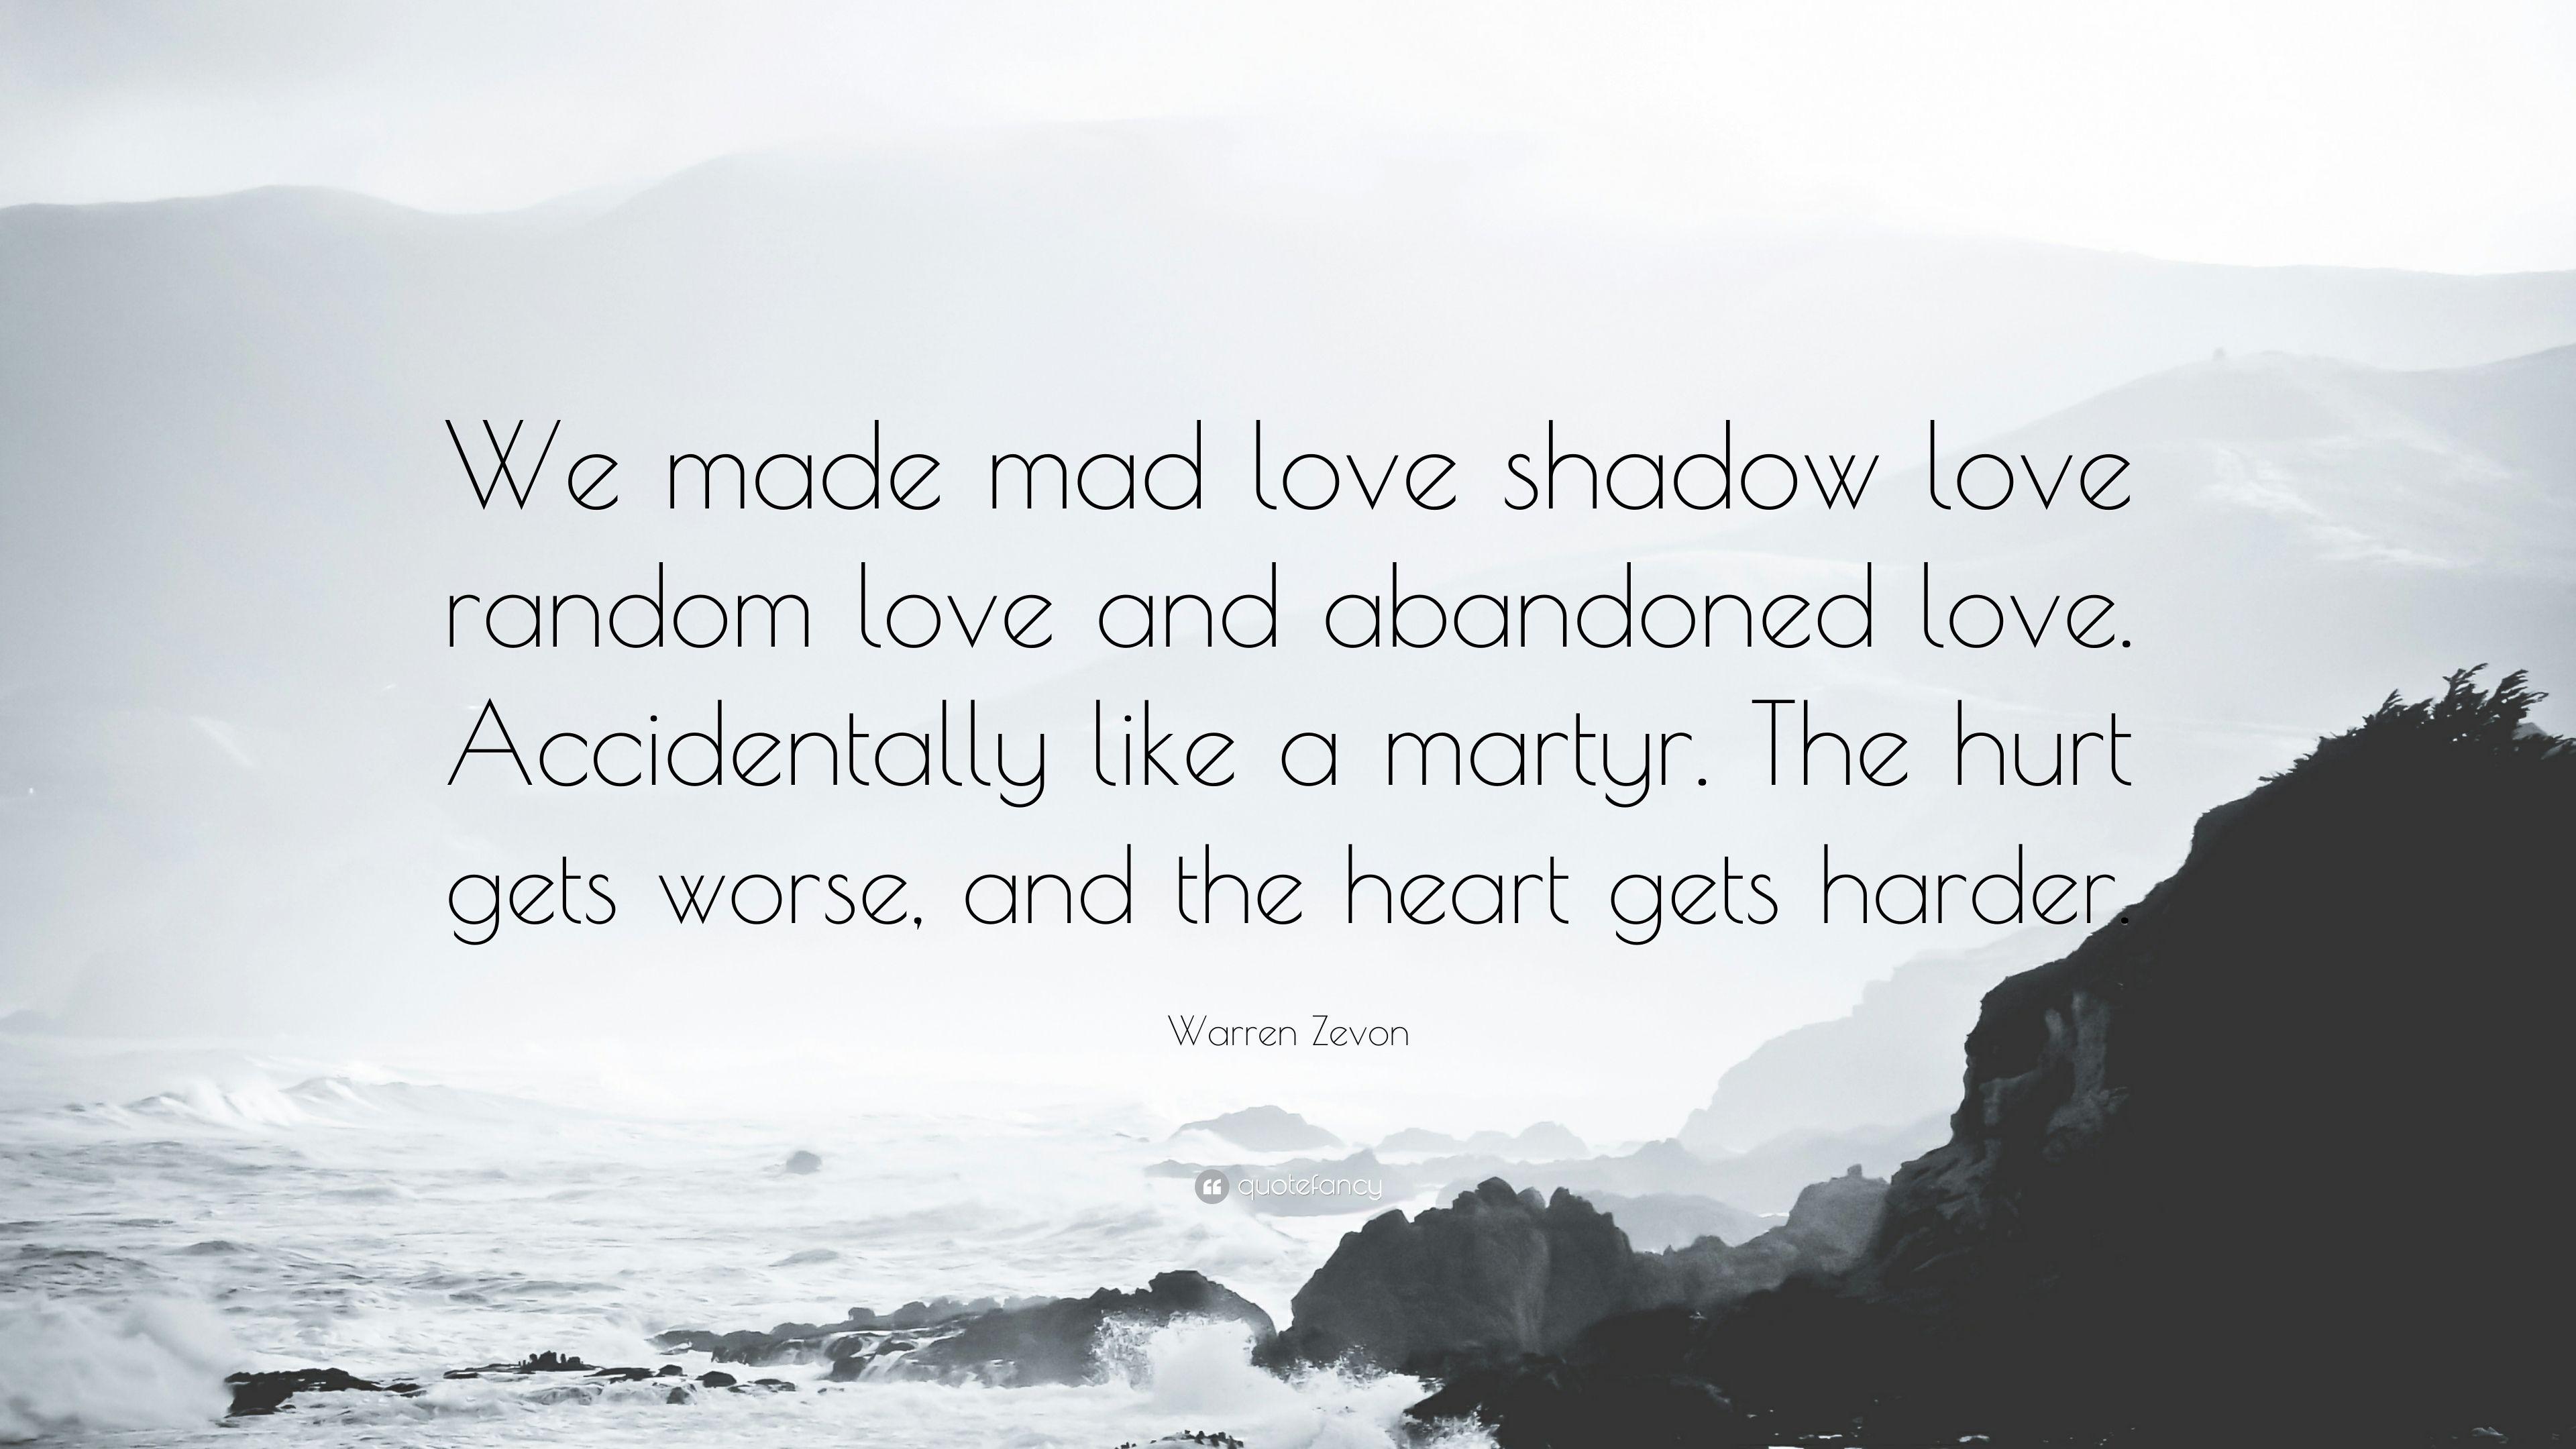 Warren Zevon Quote: “We made mad love shadow love random love